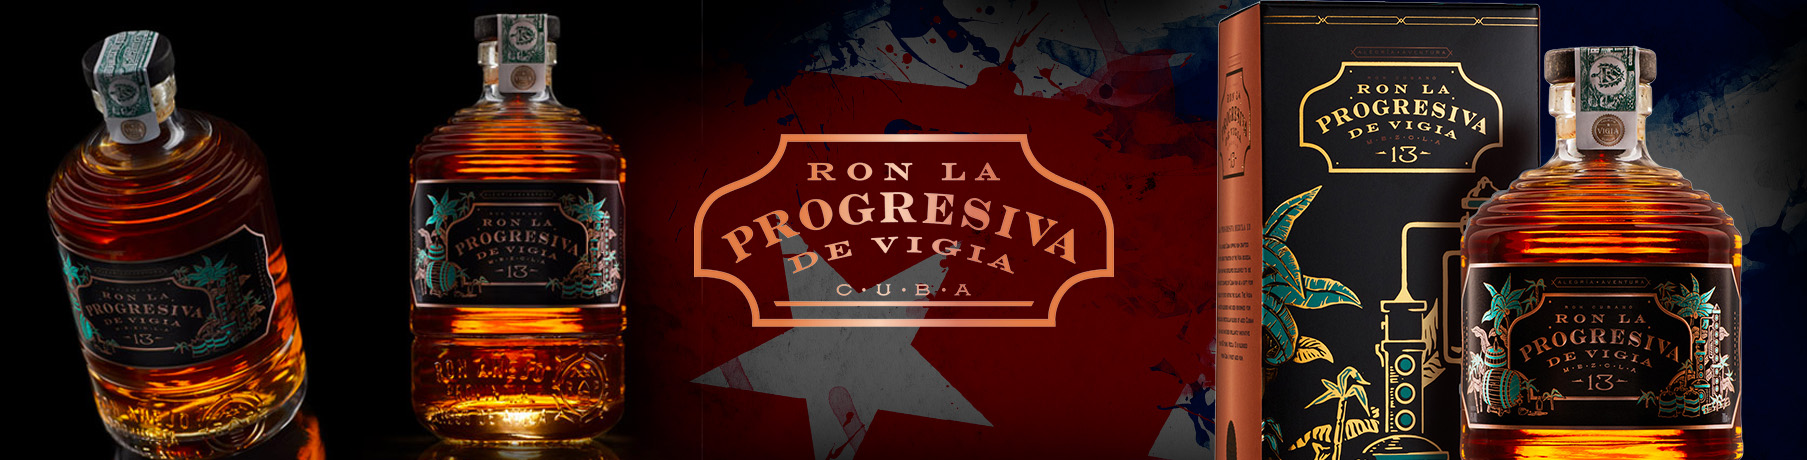 La Progresiva - prémiový rum z Kuby